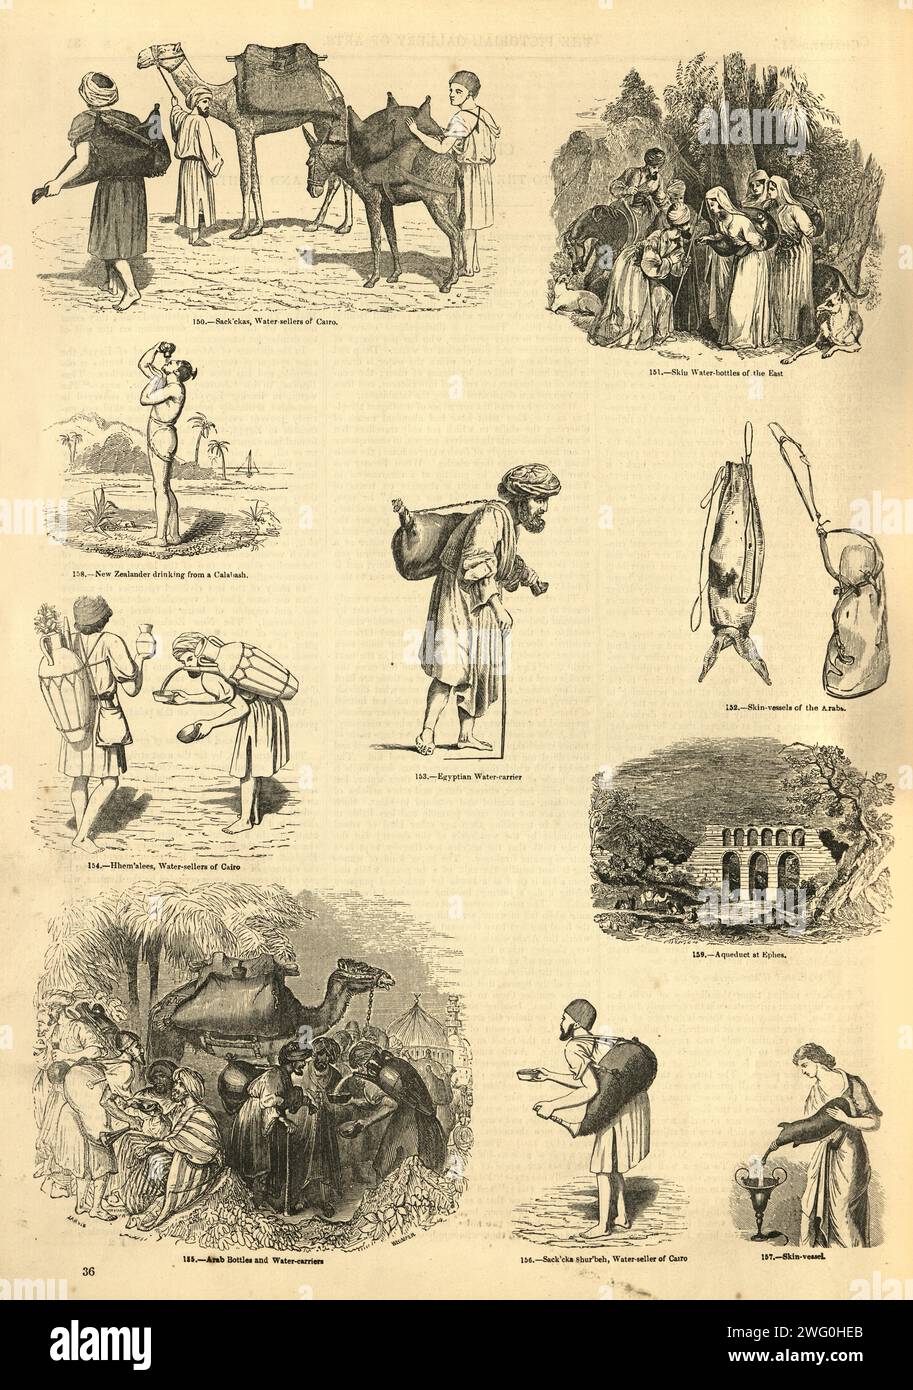 Illustration vintage vendeur d'eau, bouteilles, peaux, gourde, années 1850, victorien 19e siècle Banque D'Images